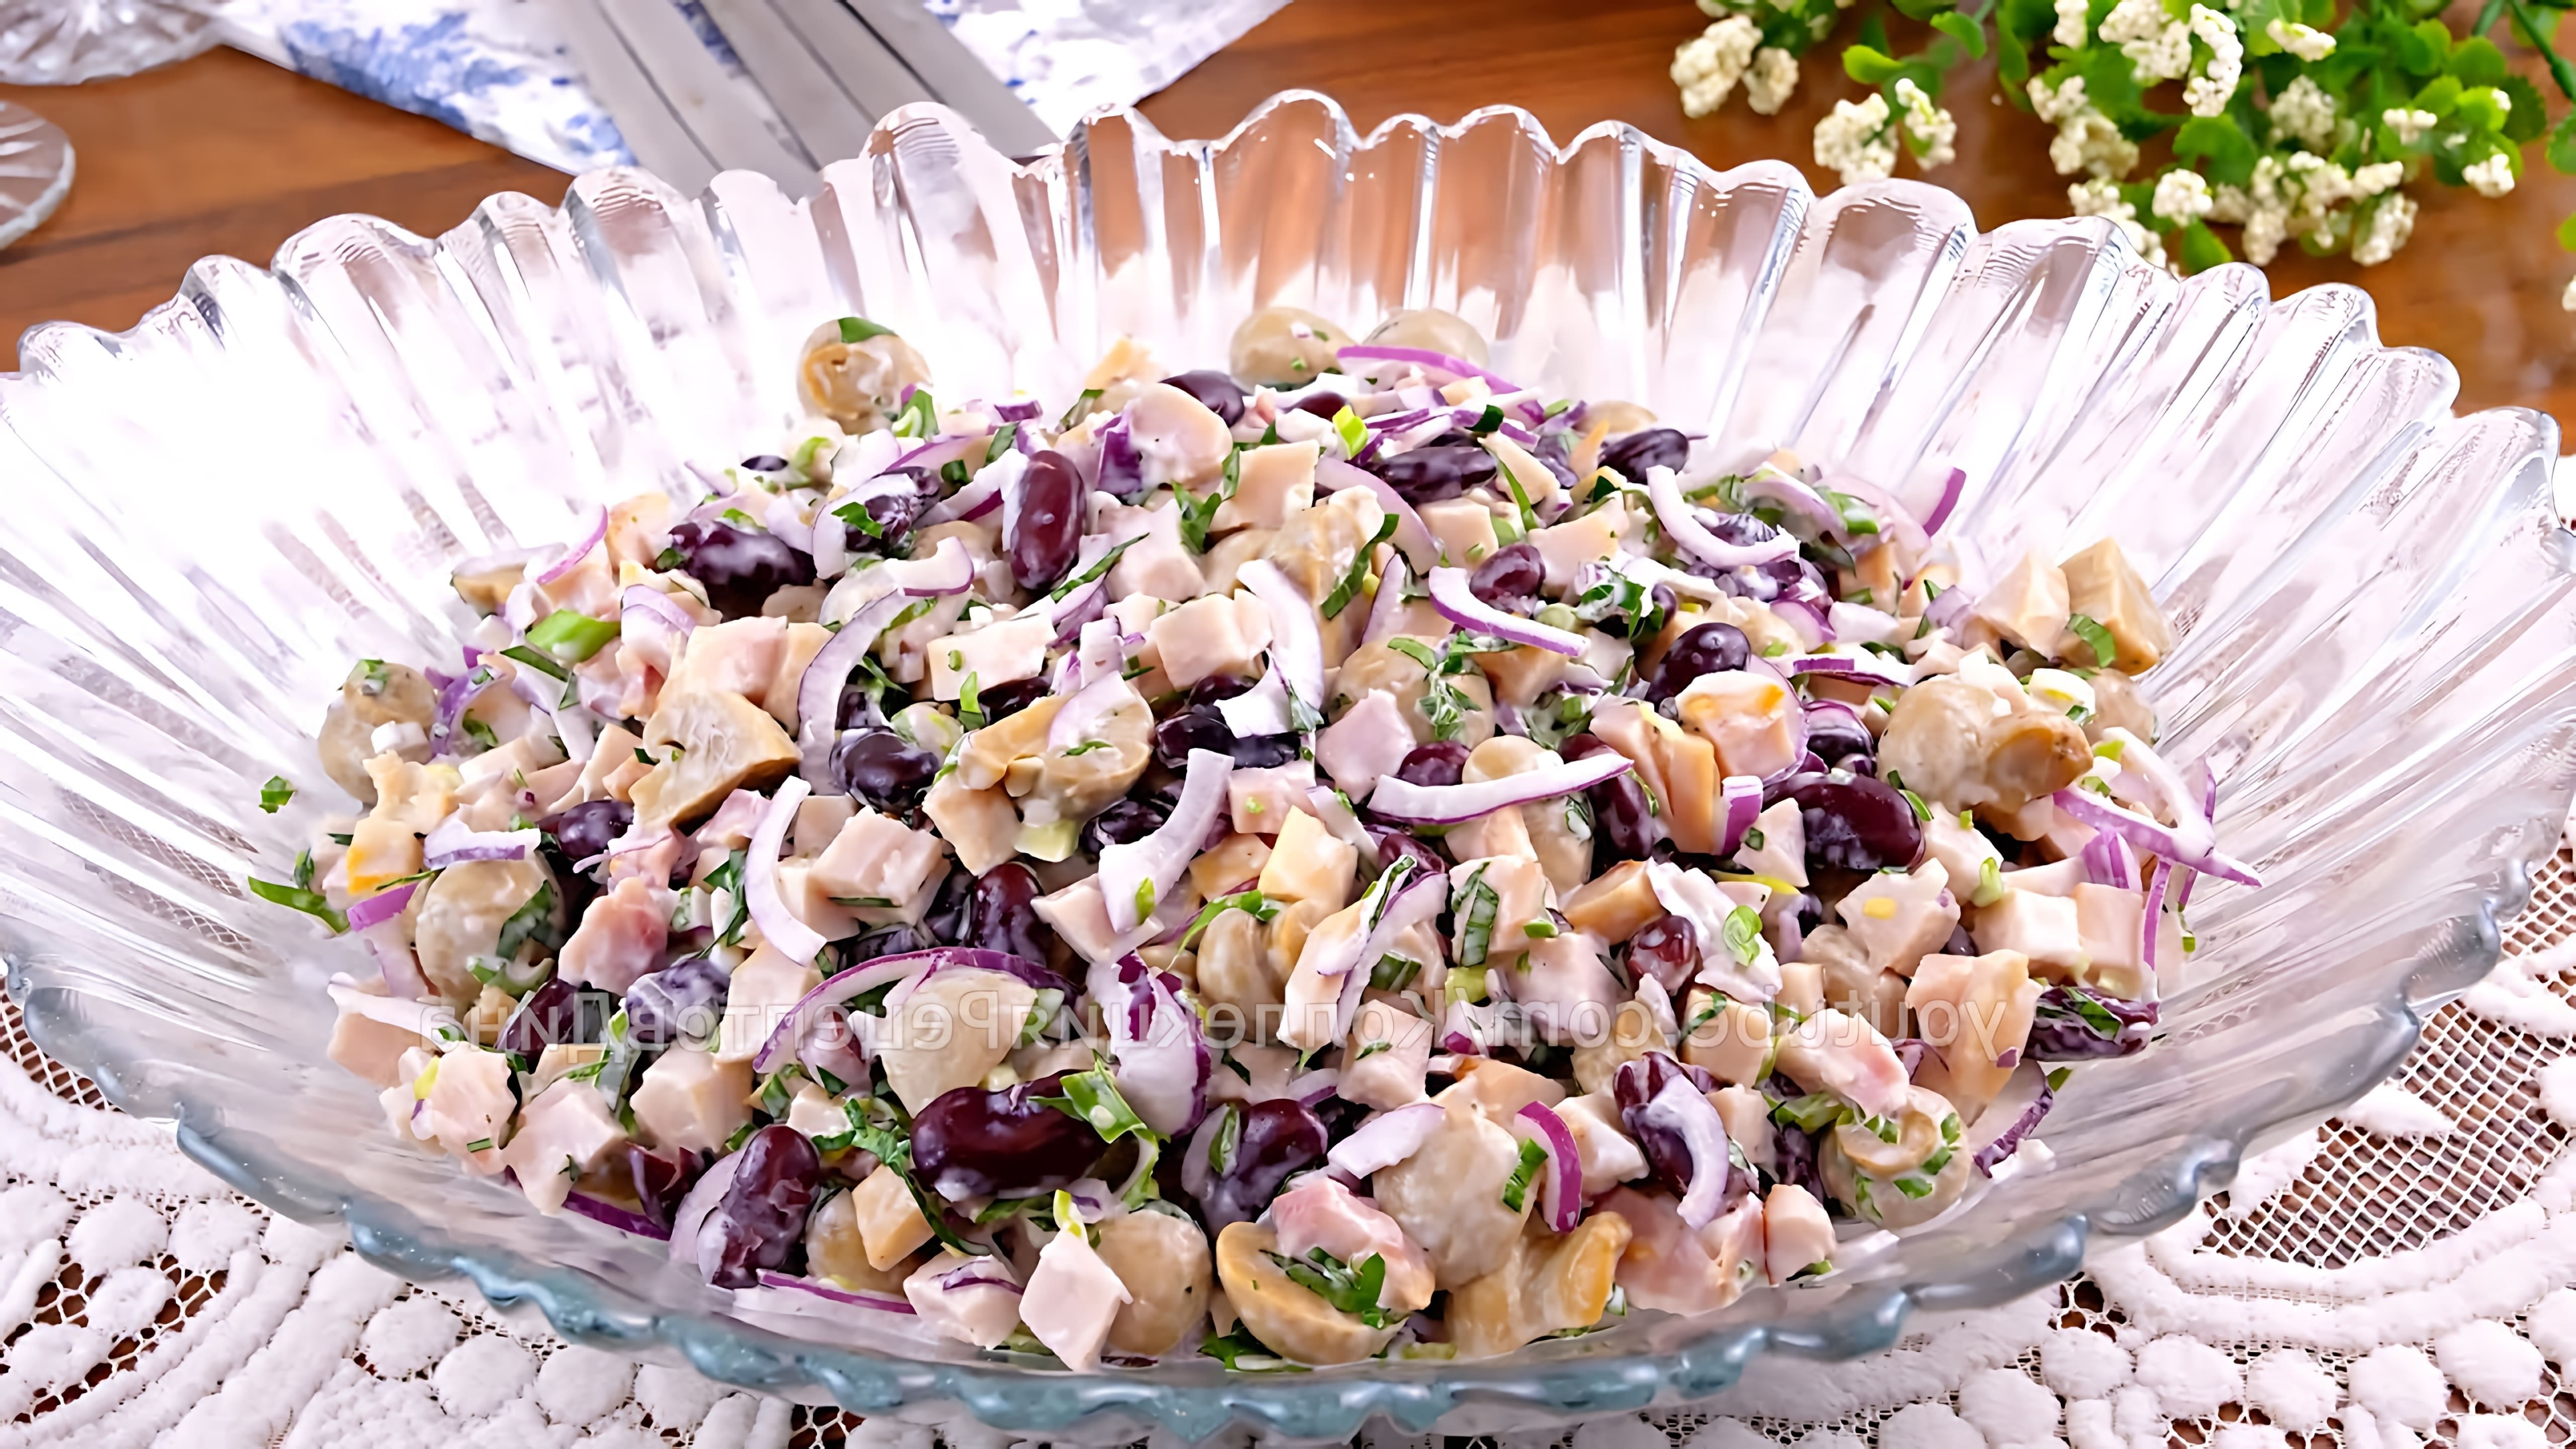 В этом видео демонстрируется рецепт салата "Баварский" с копченой курицей, грибами и фасолью